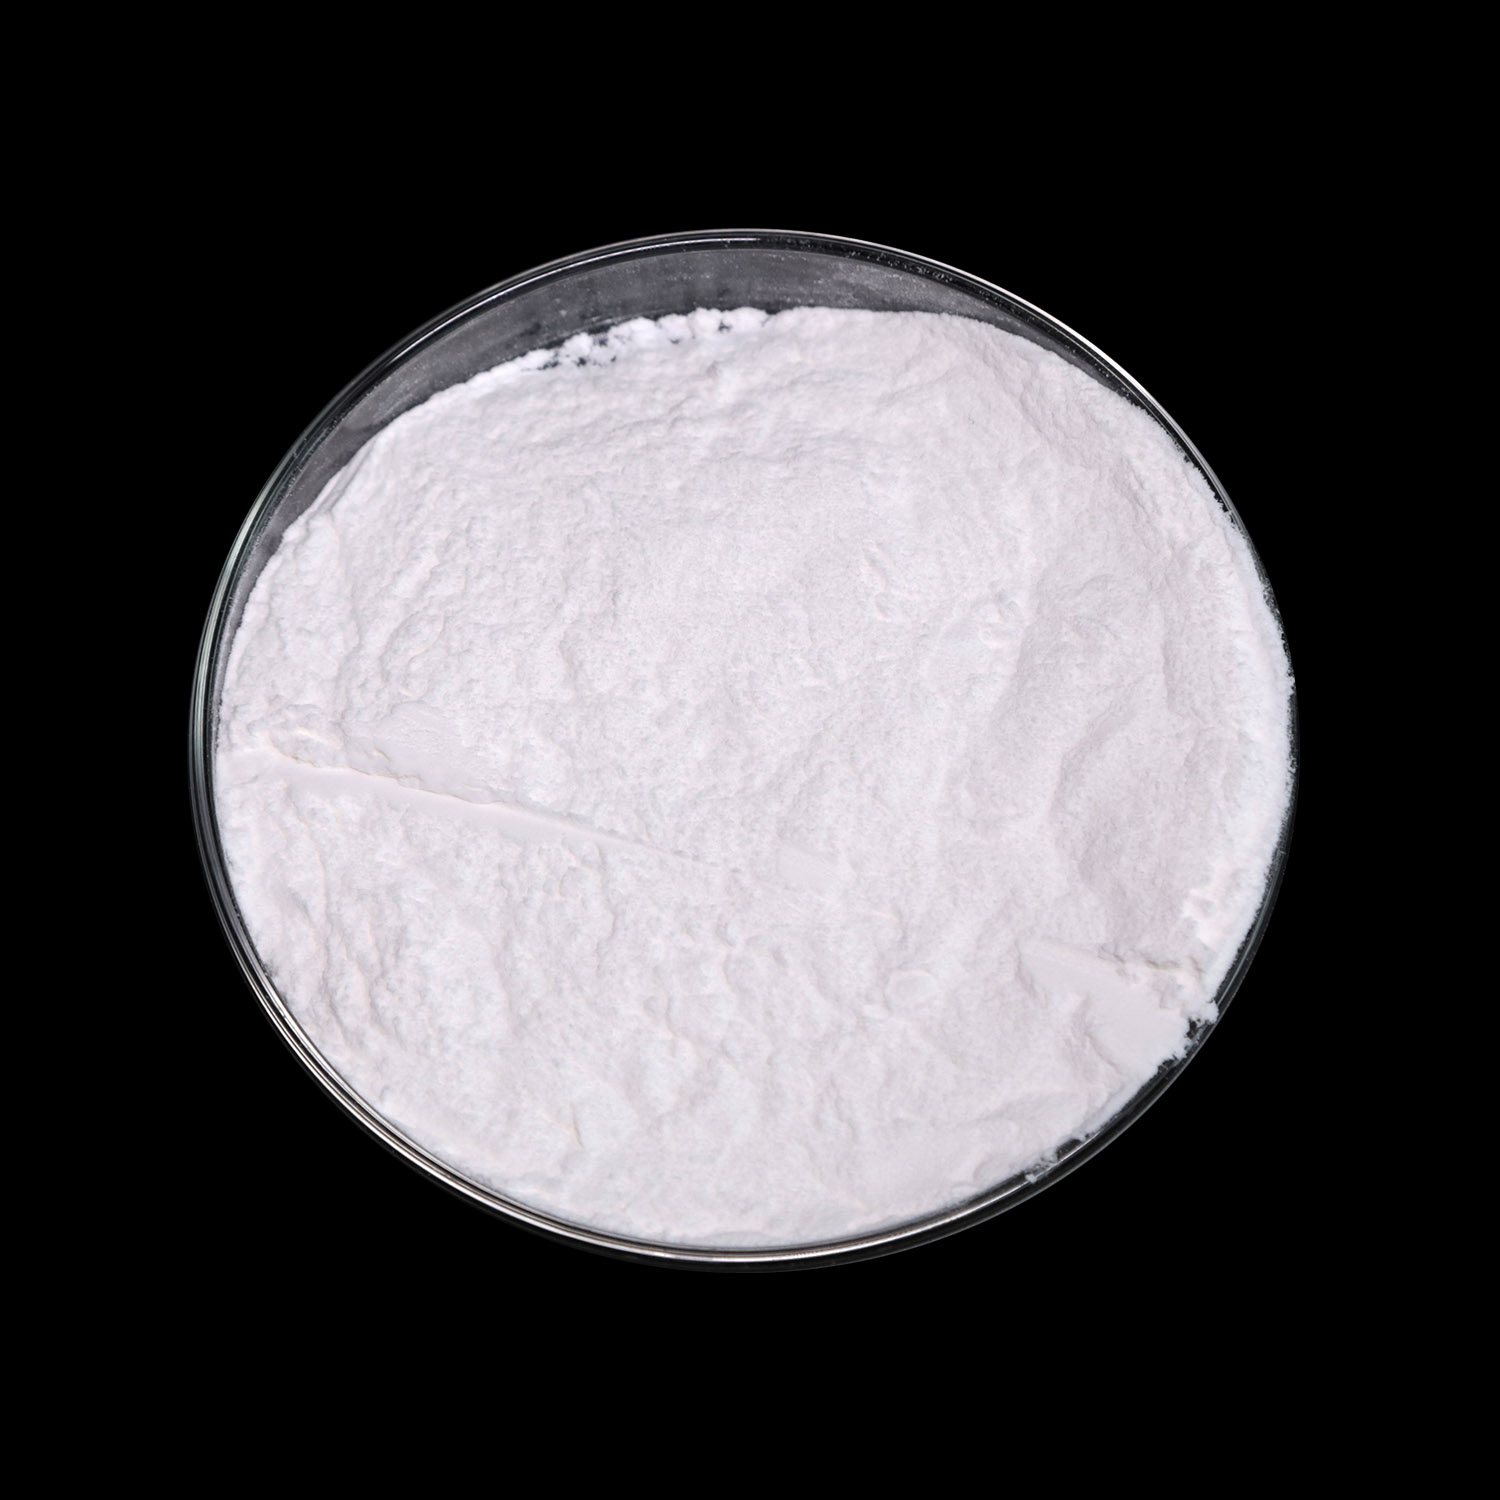 Meziprodukty Meisanalgesia 2-dimethylaminoisopropylchlorid hydrochlorid v CAS 4584-49-0